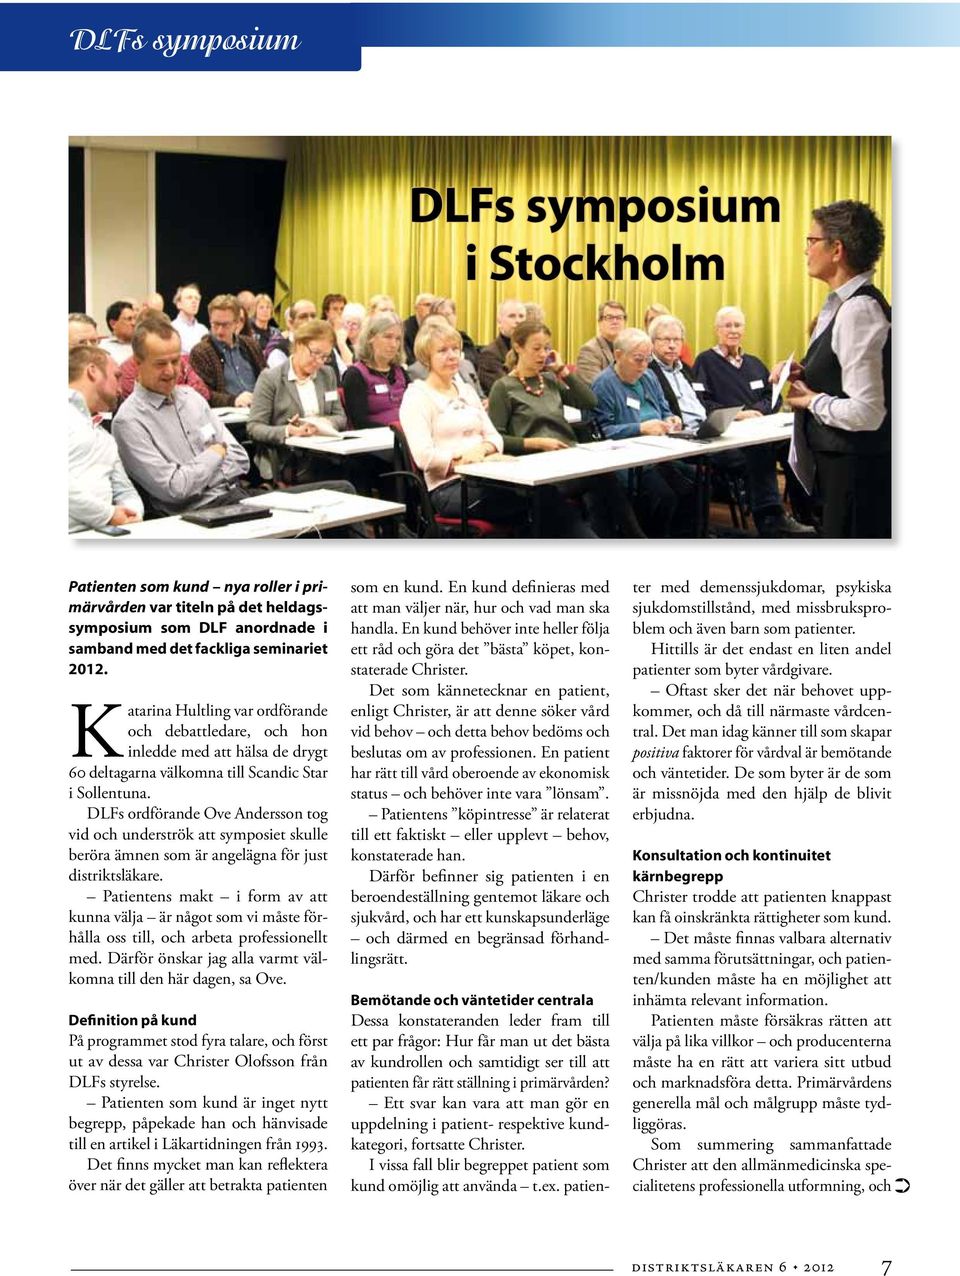 DLFs ordförande Ove Andersson tog vid och underströk att symposiet skulle beröra ämnen som är angelägna för just distriktsläkare.